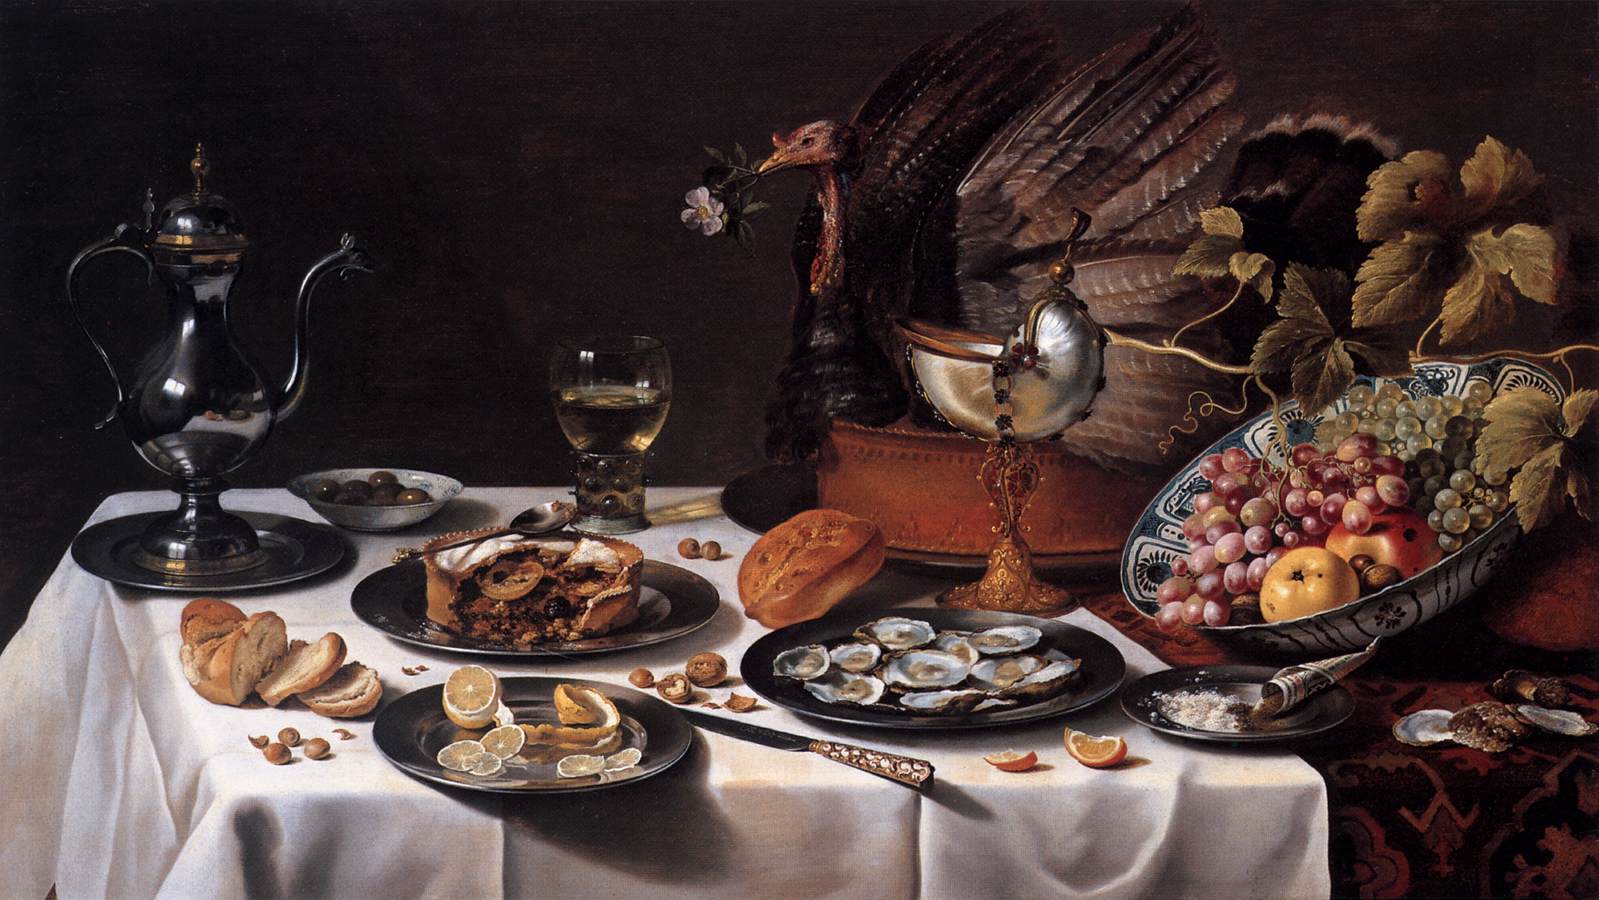 Still Life with a Turkey Pie by Pieter Claesz - 1627 - 132 x 75 cm Rijksmuseum